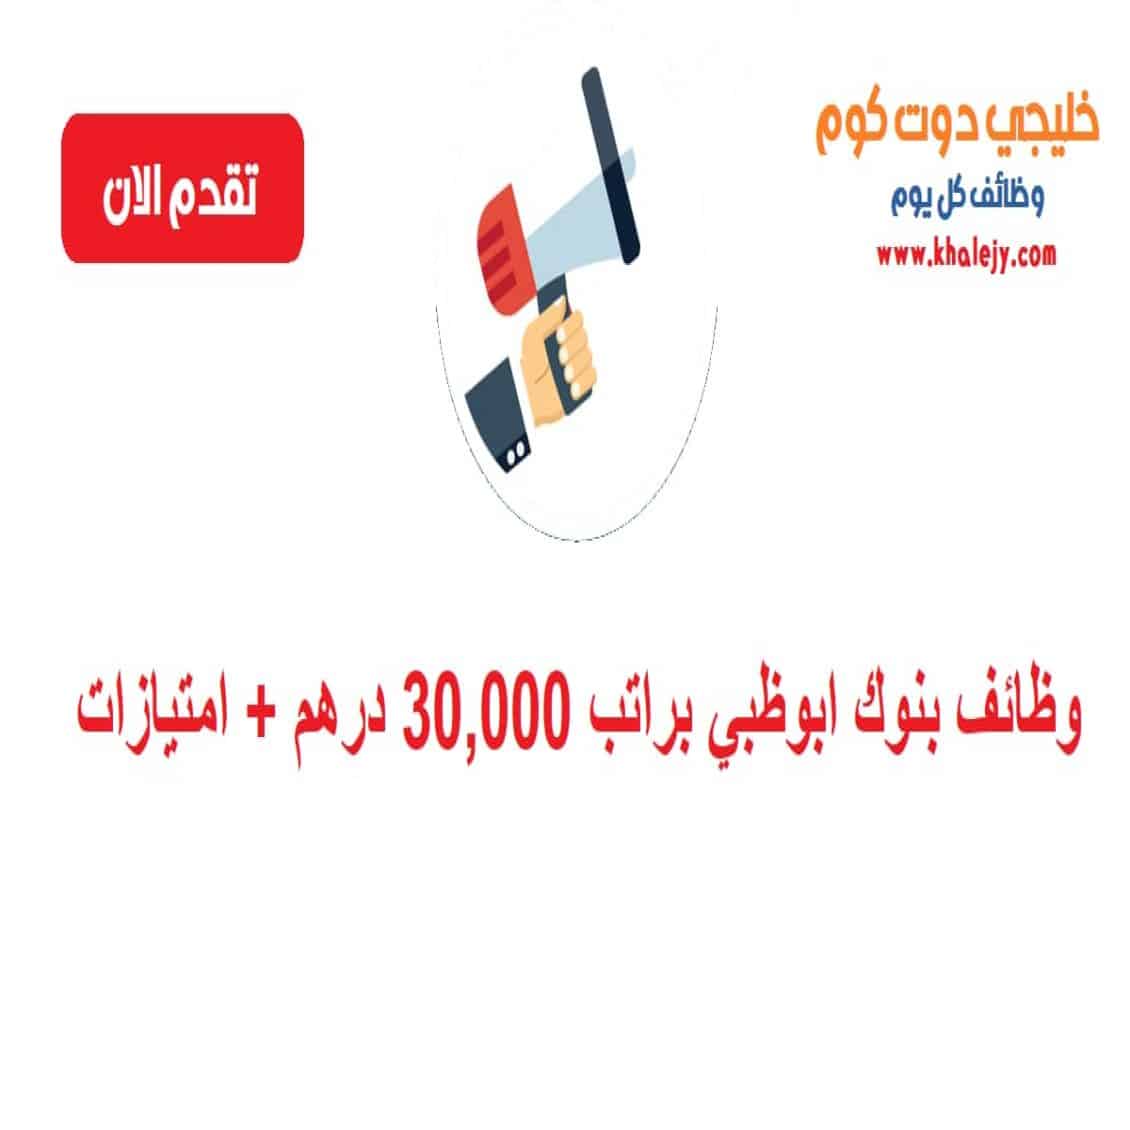 وظائف بنوك ابوظبي براتب 30,000 درهم + امتیازات